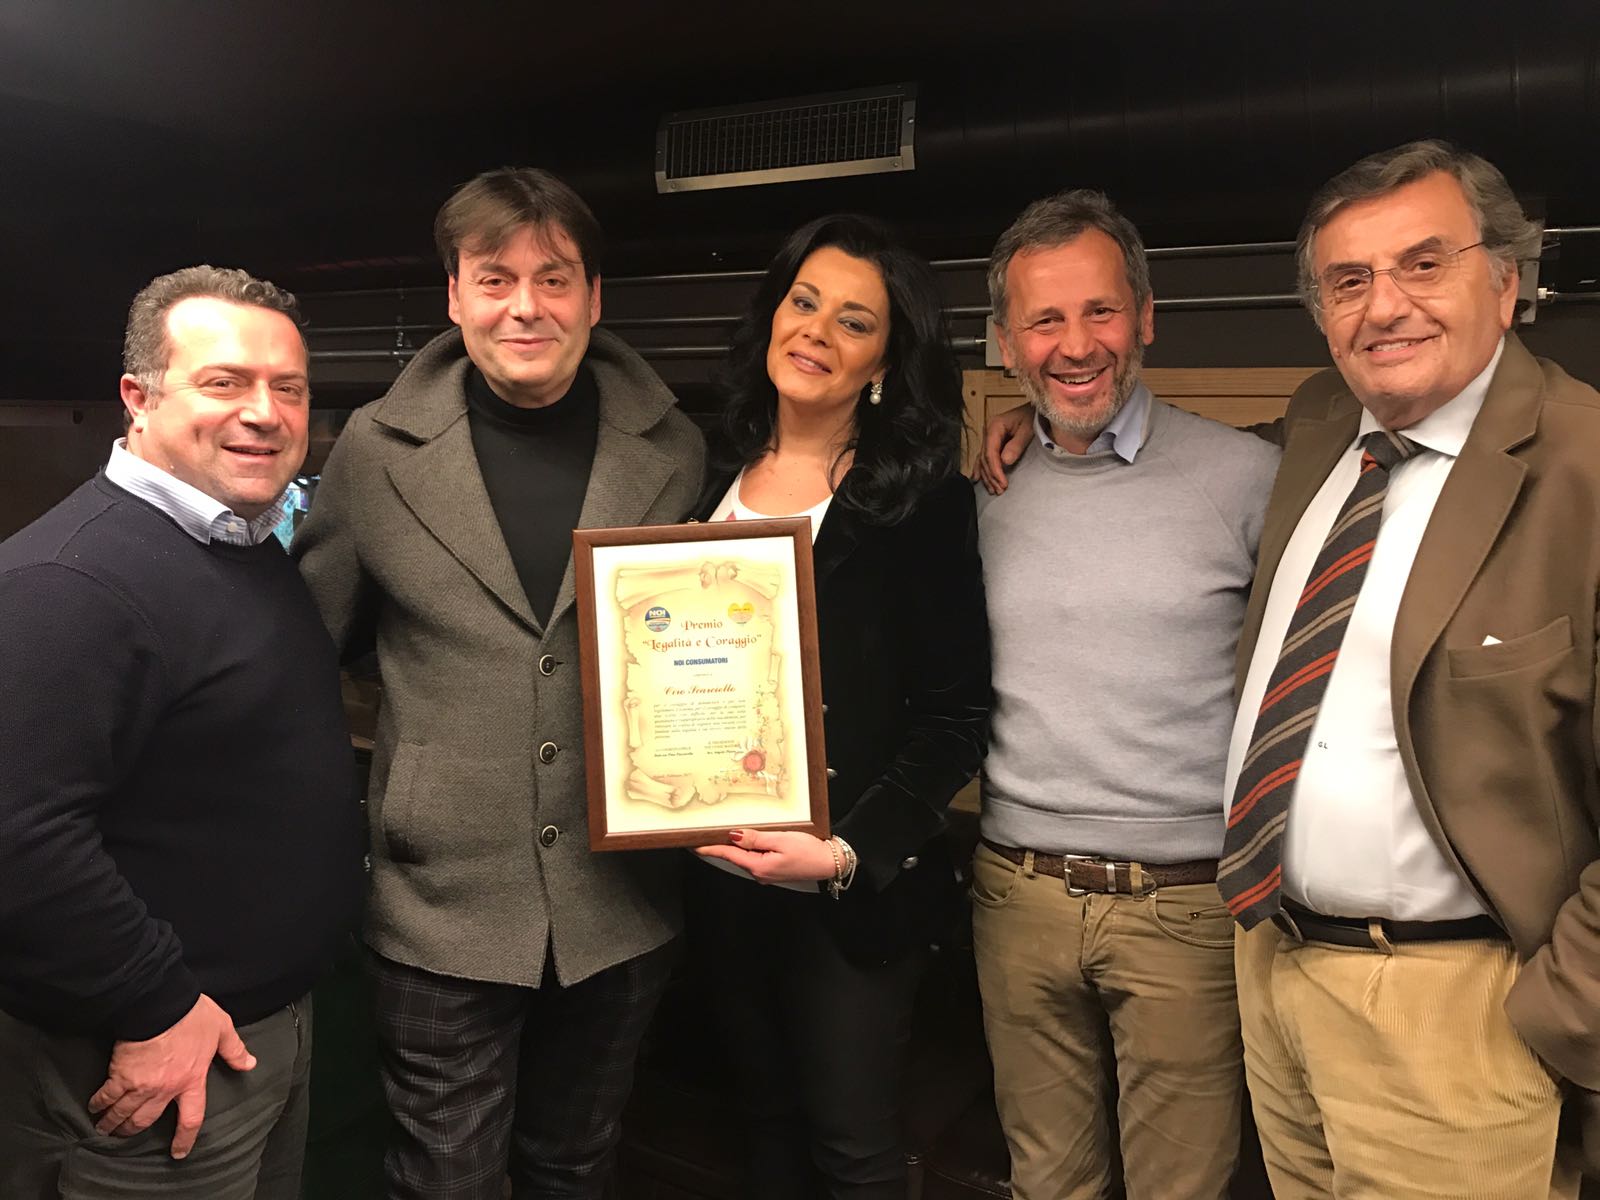  L’associazione “Noi Consumatori” di Napoli assegna il premio “Legalità coraggio” a Ciro Scarciello